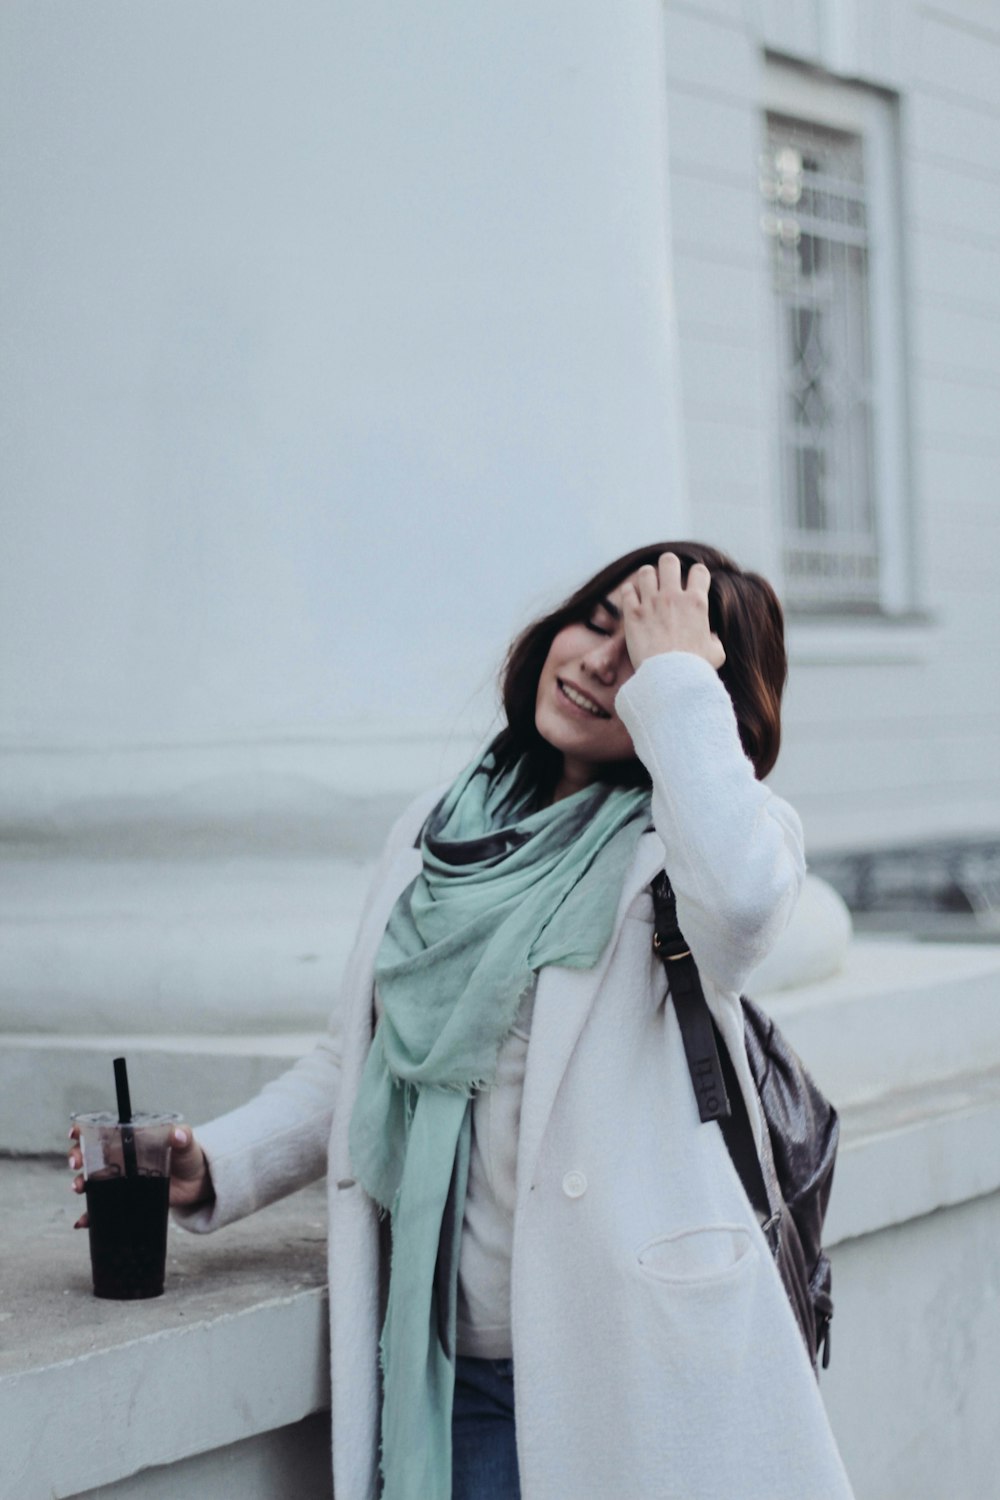 흰색 페인트 건물 근처에서 일회용 컵을 들고 있는 여자